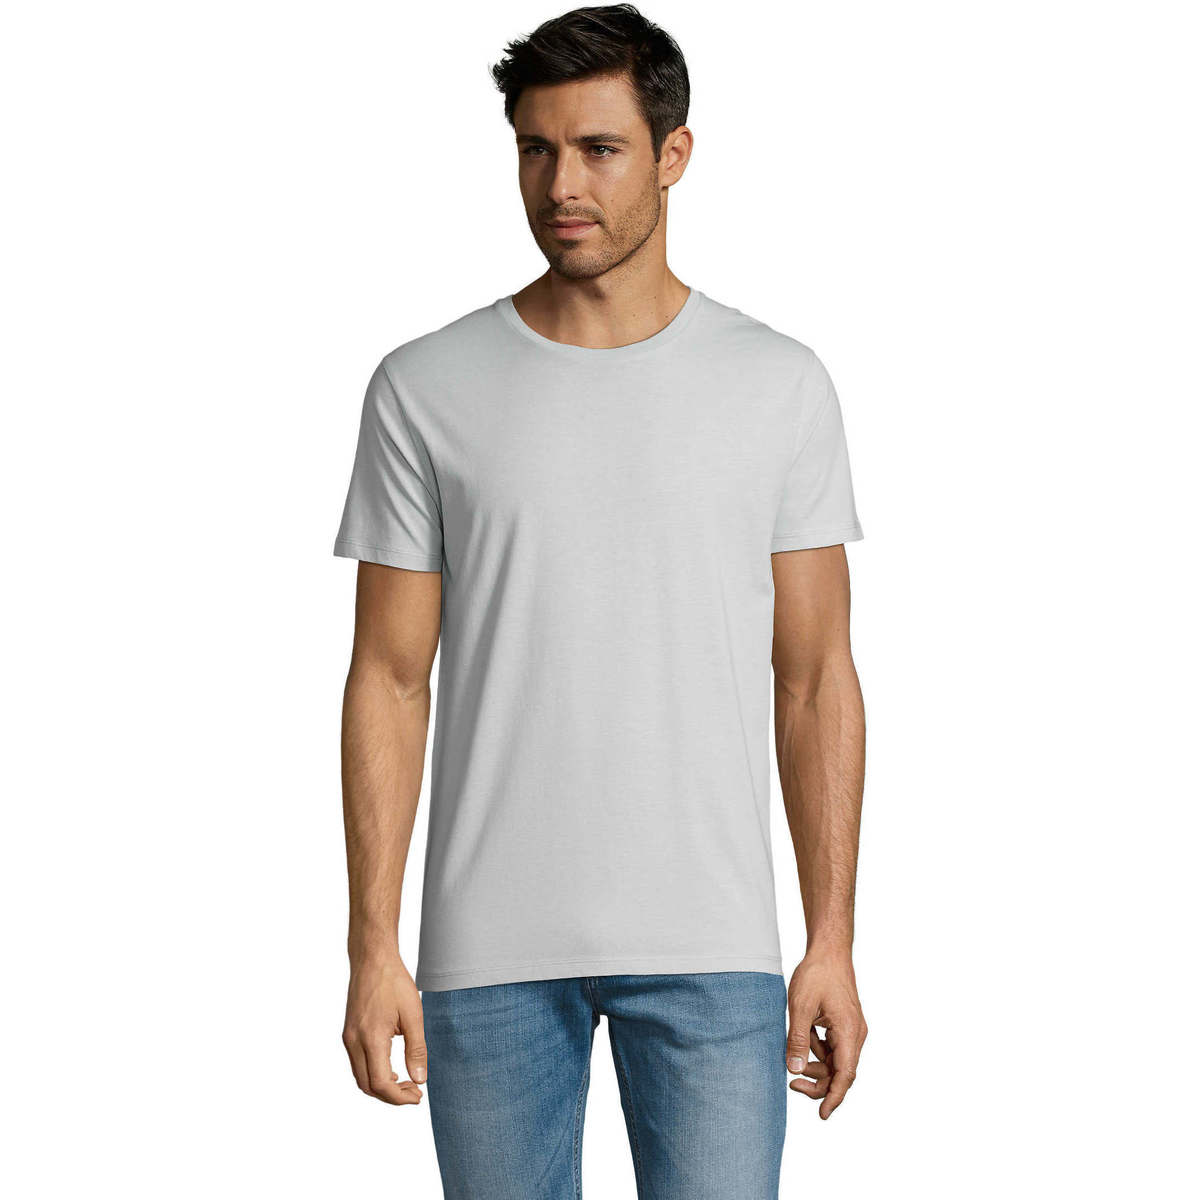 textil Herr T-shirts Sols Martin camiseta de hombre Blå